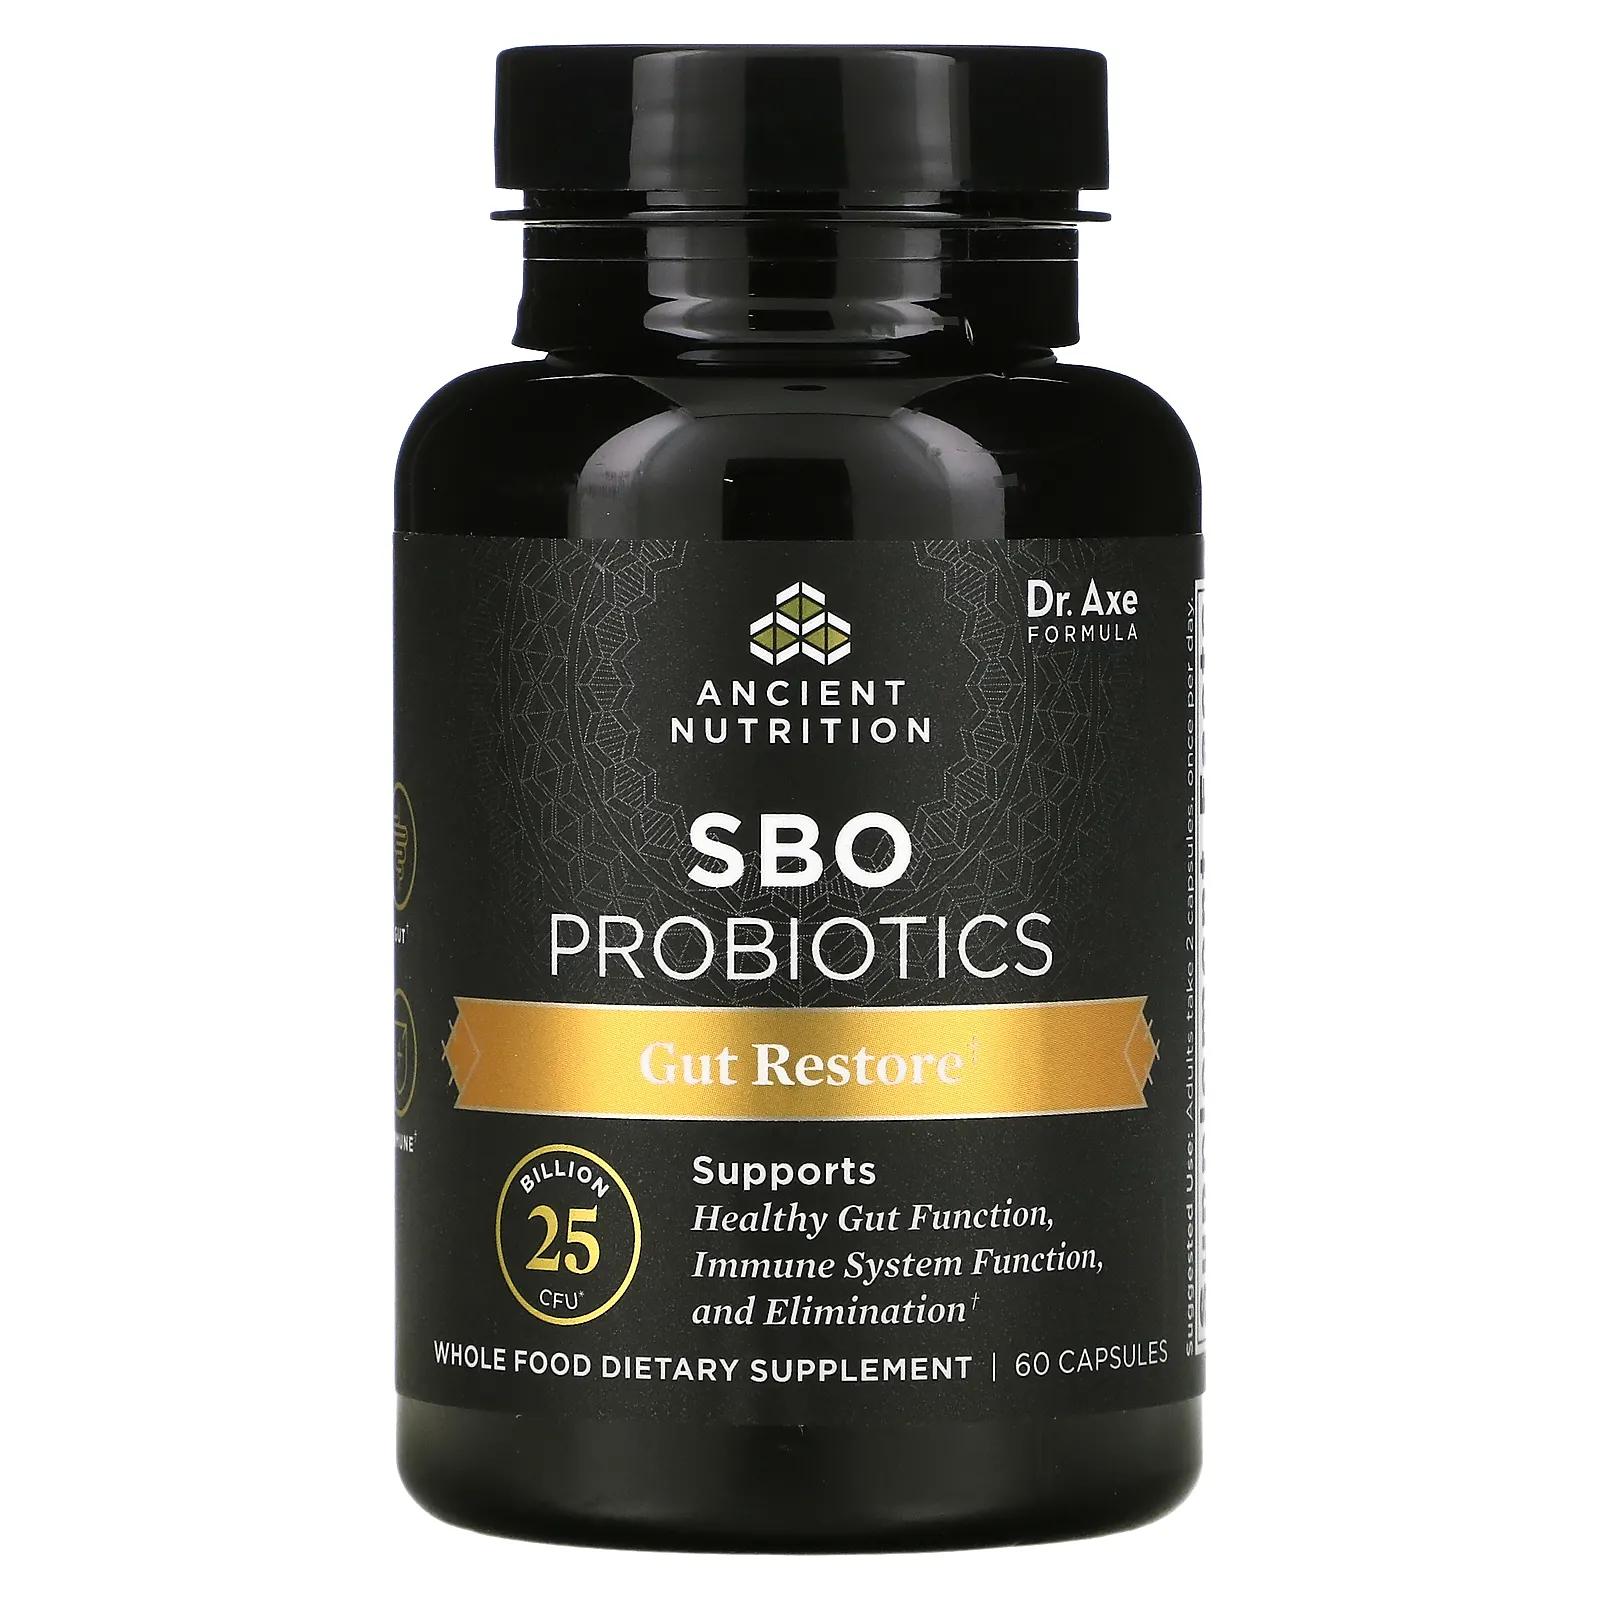 dr axe ancient nutrition sbo probiotics ultimate 50 млрд кое 60 капсул Dr. Axe / Ancient Nutrition SBO Probiotics средство для восстановления кишечника 25 млрд КОЕ 60 капсул